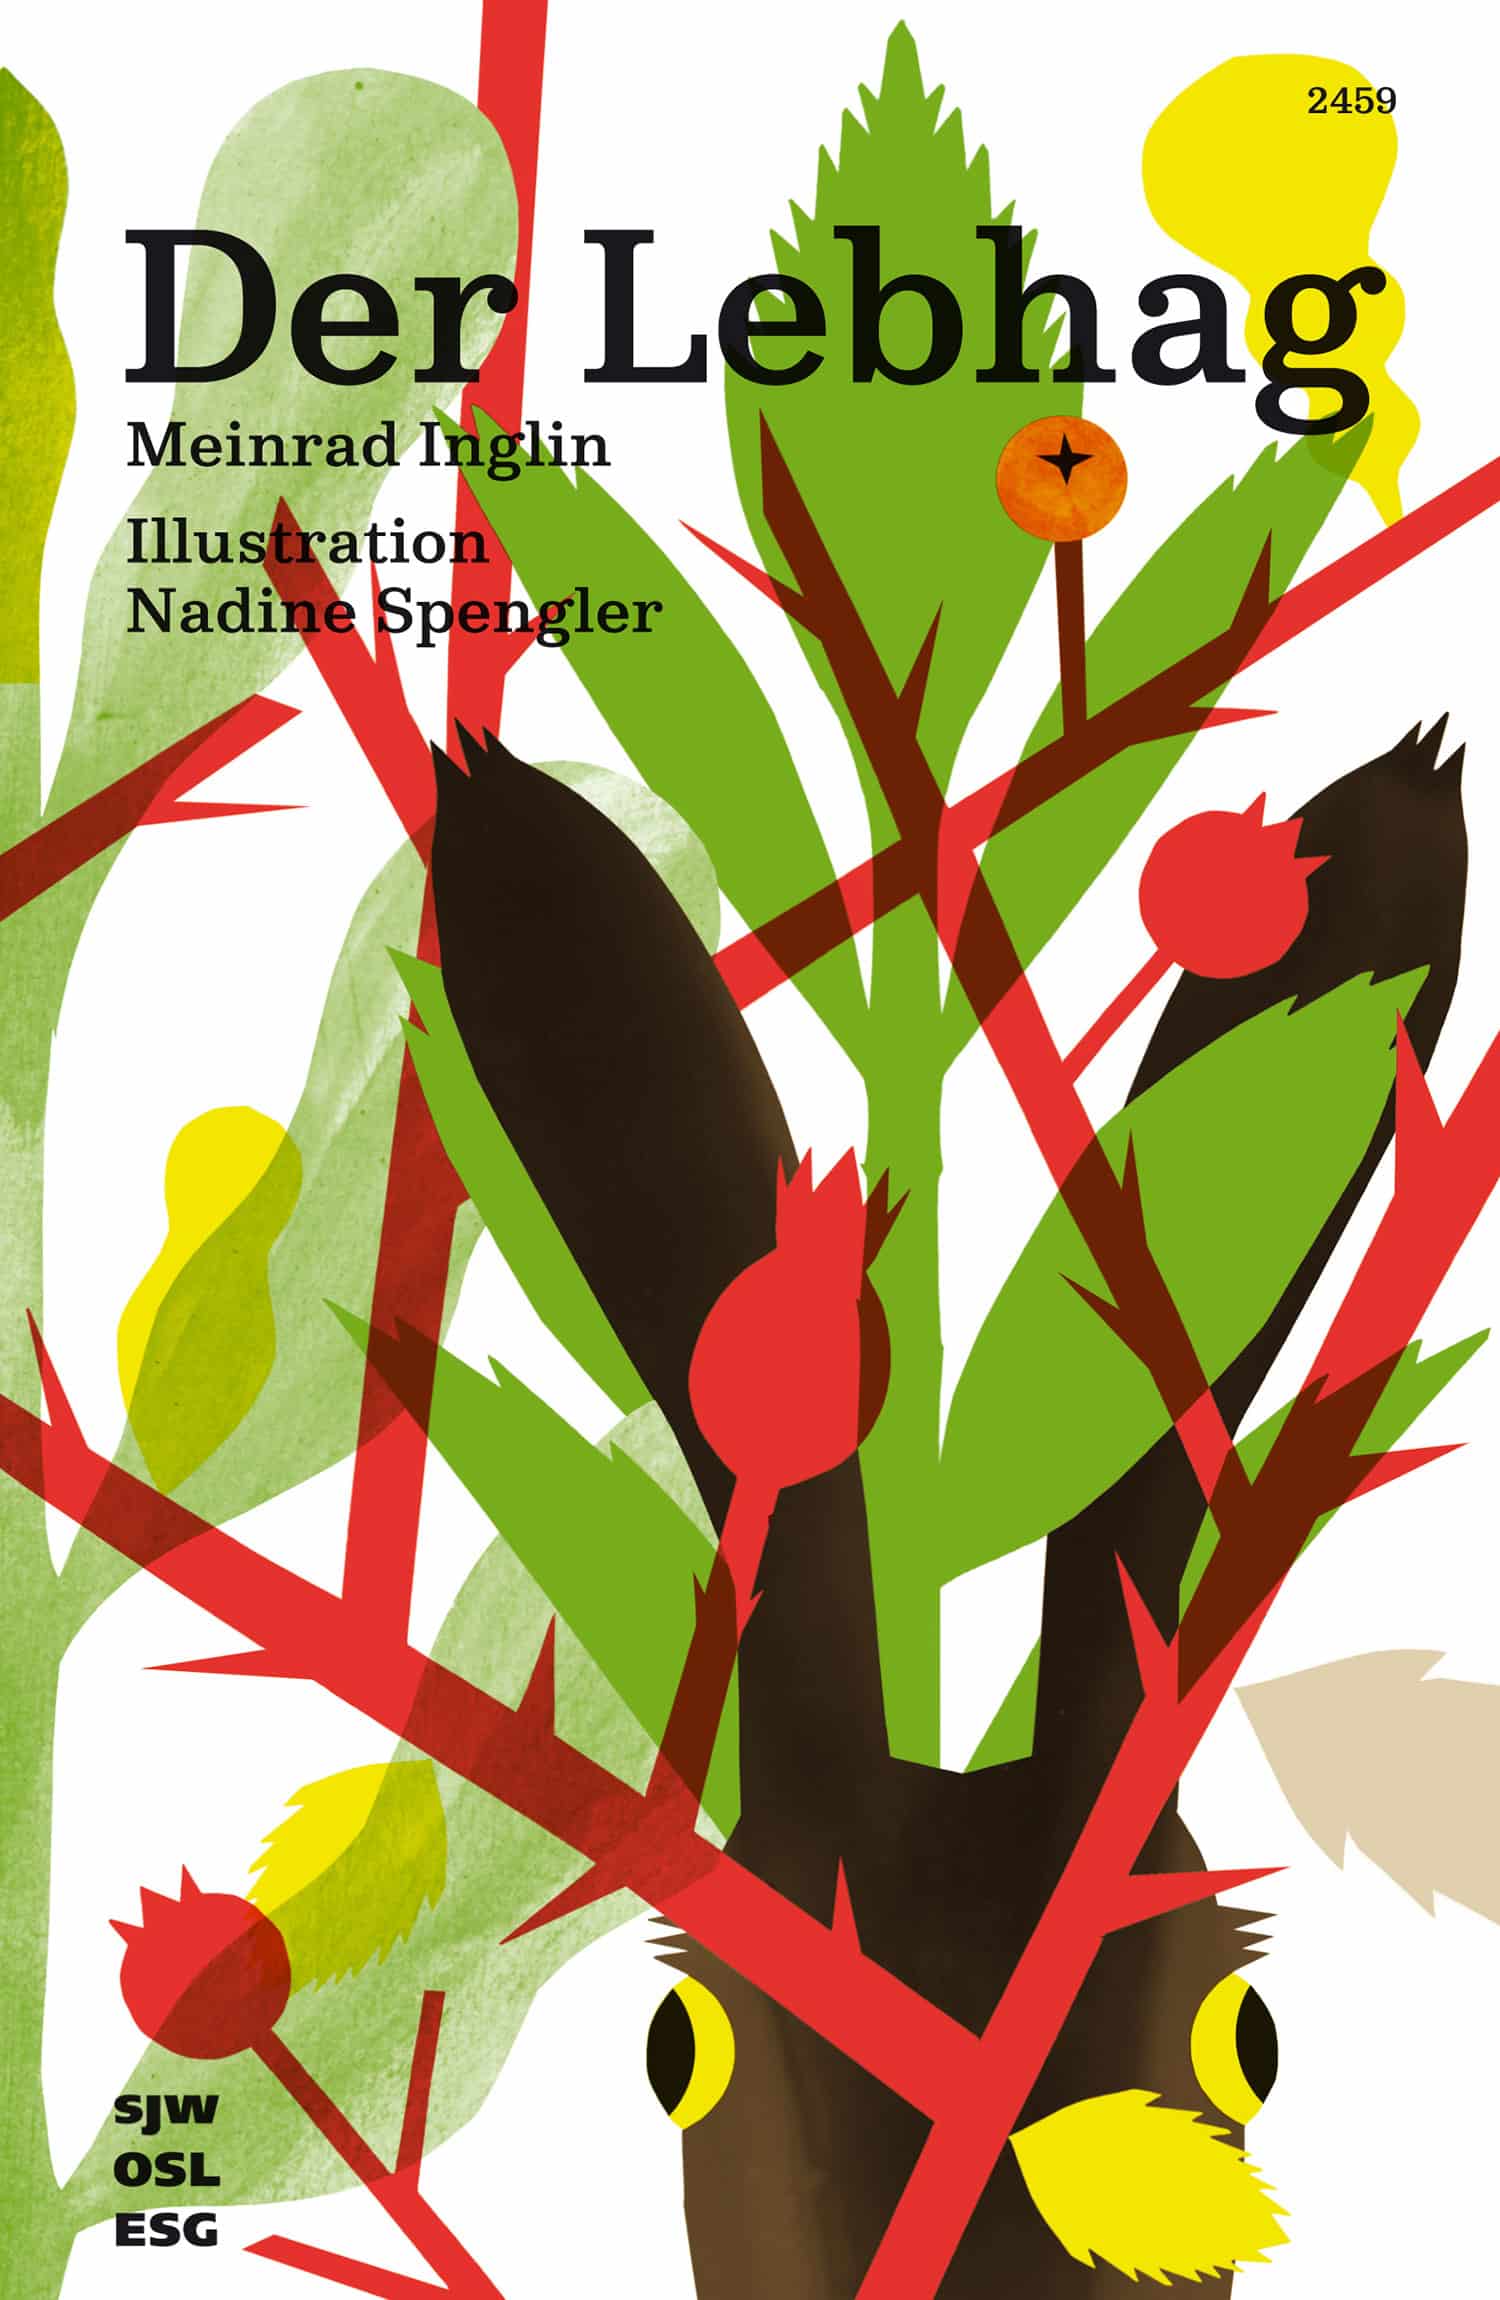 Der Lebhag, ein Buch von Meinrad Inglin, Illustration von Nadine Spengler, SJW Verlag, Natur 